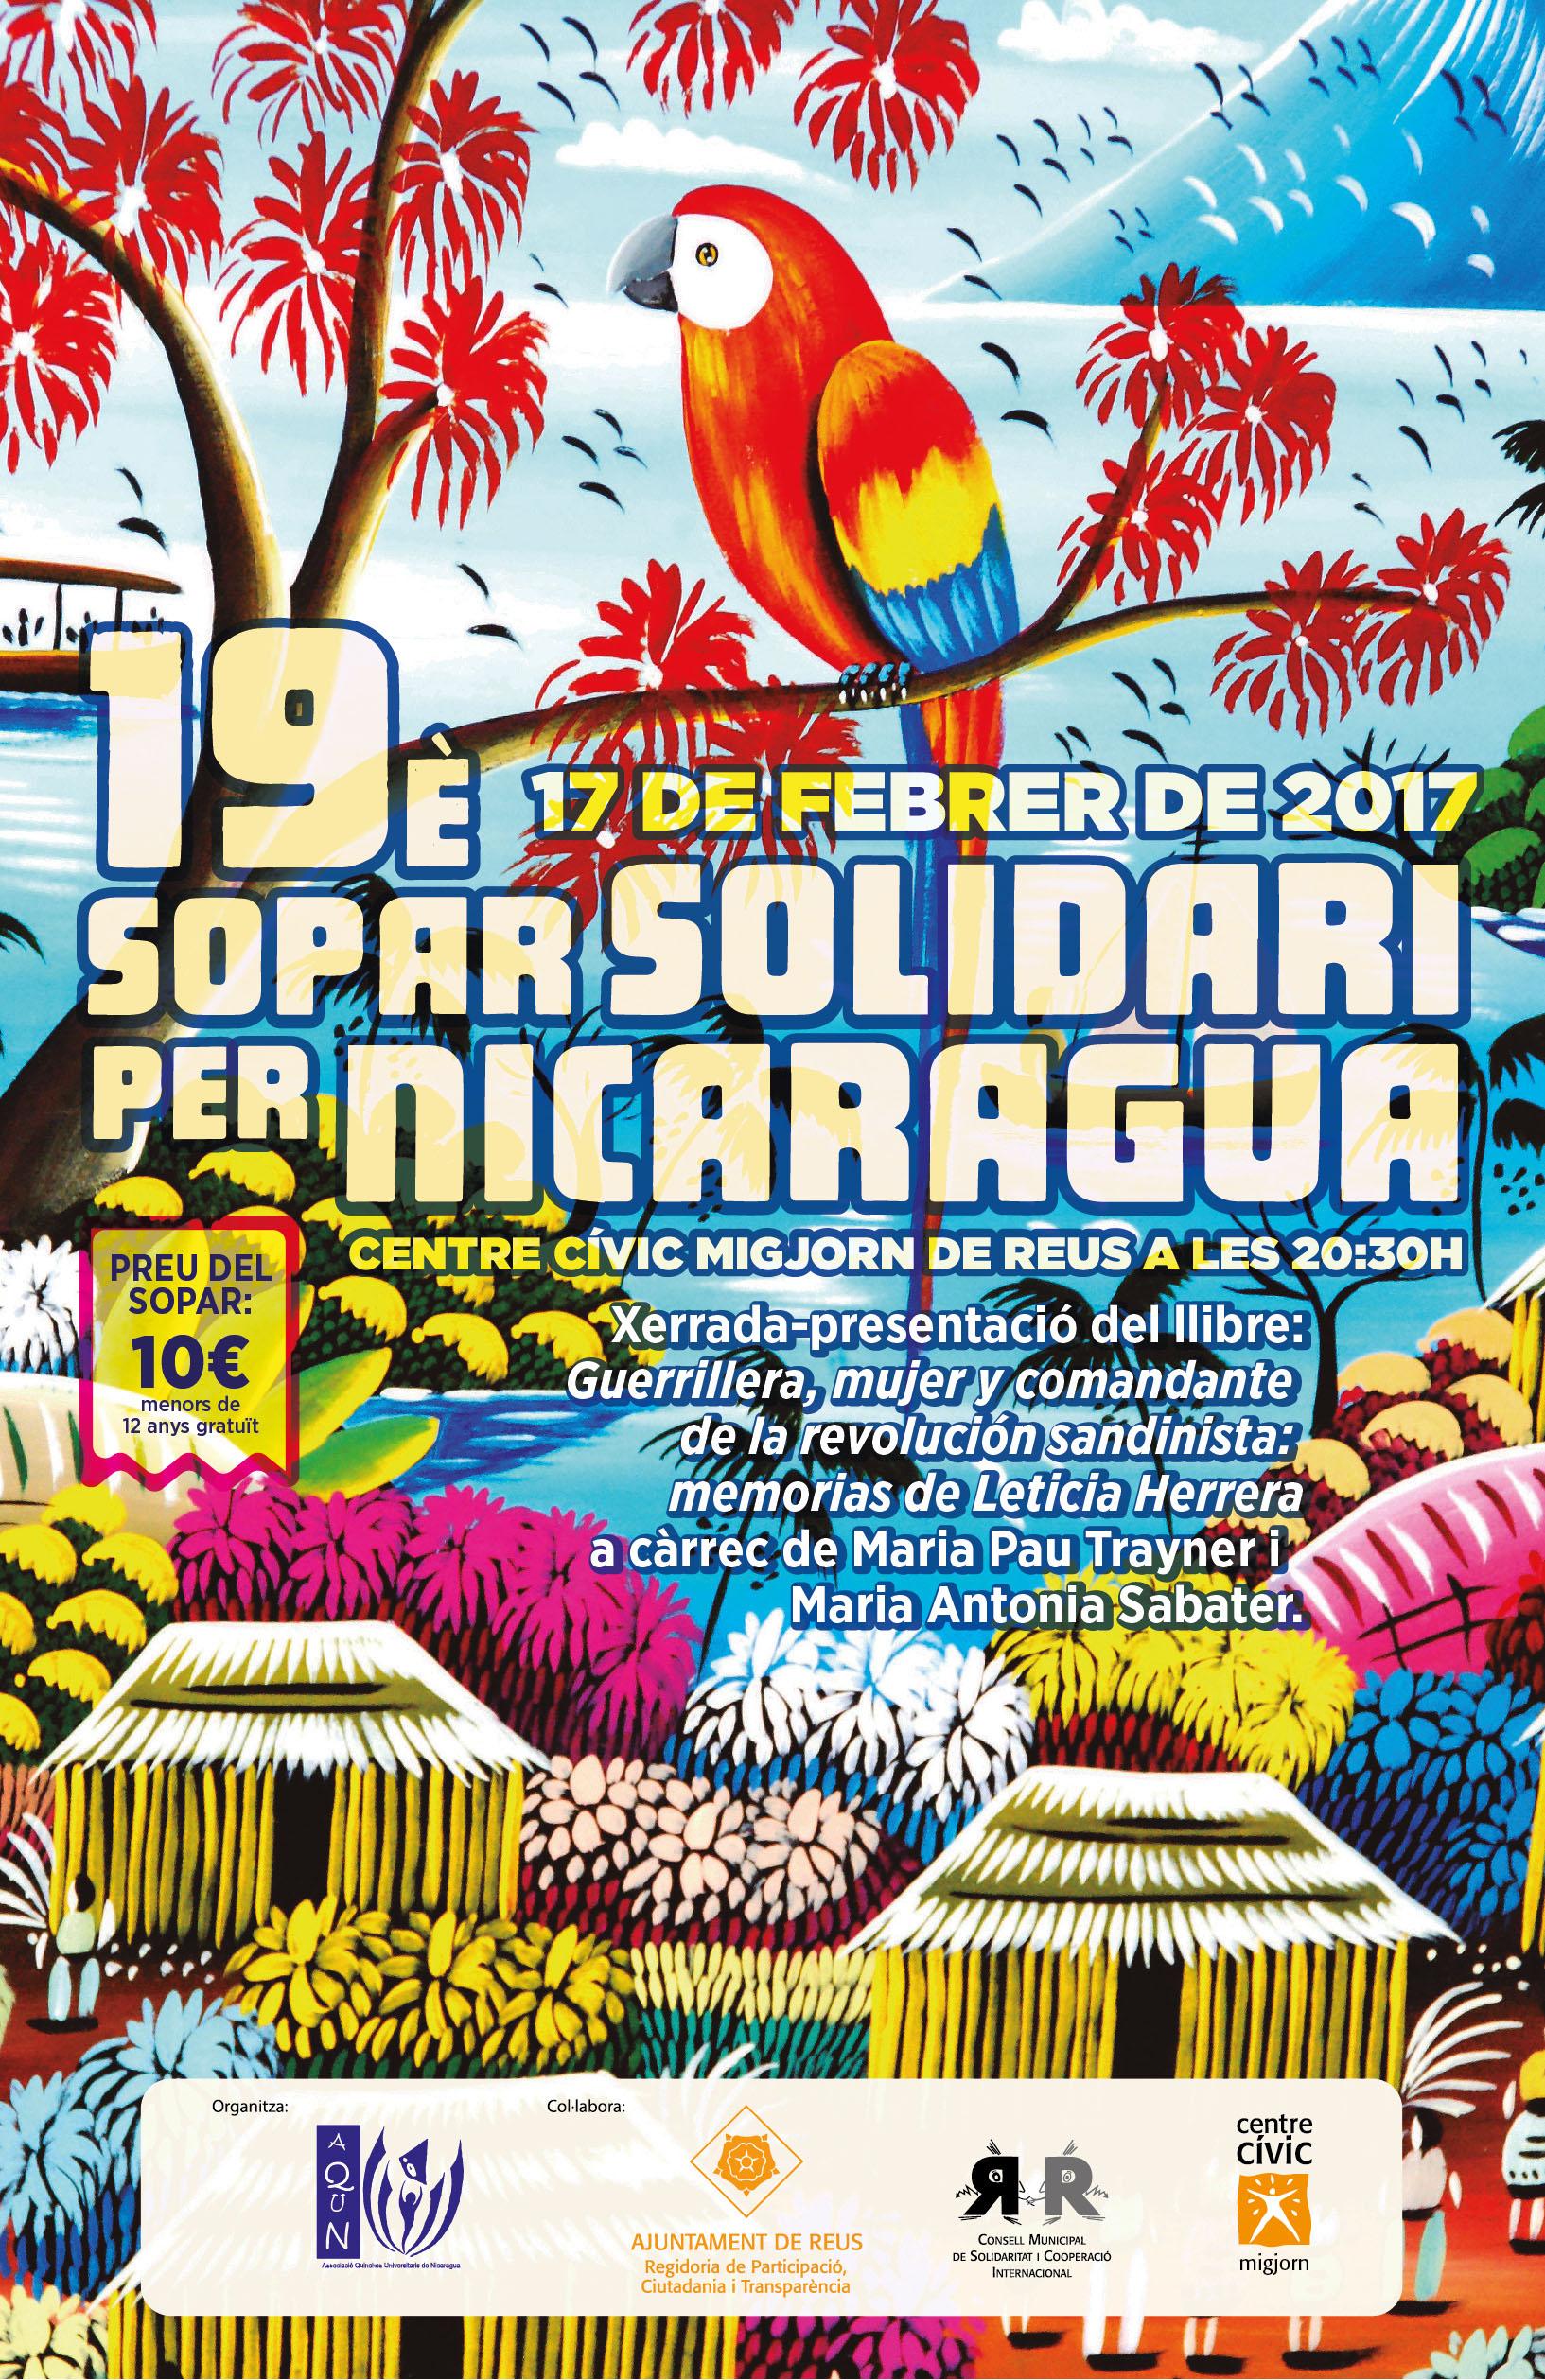 19è Sopar Solidari per Nicargua